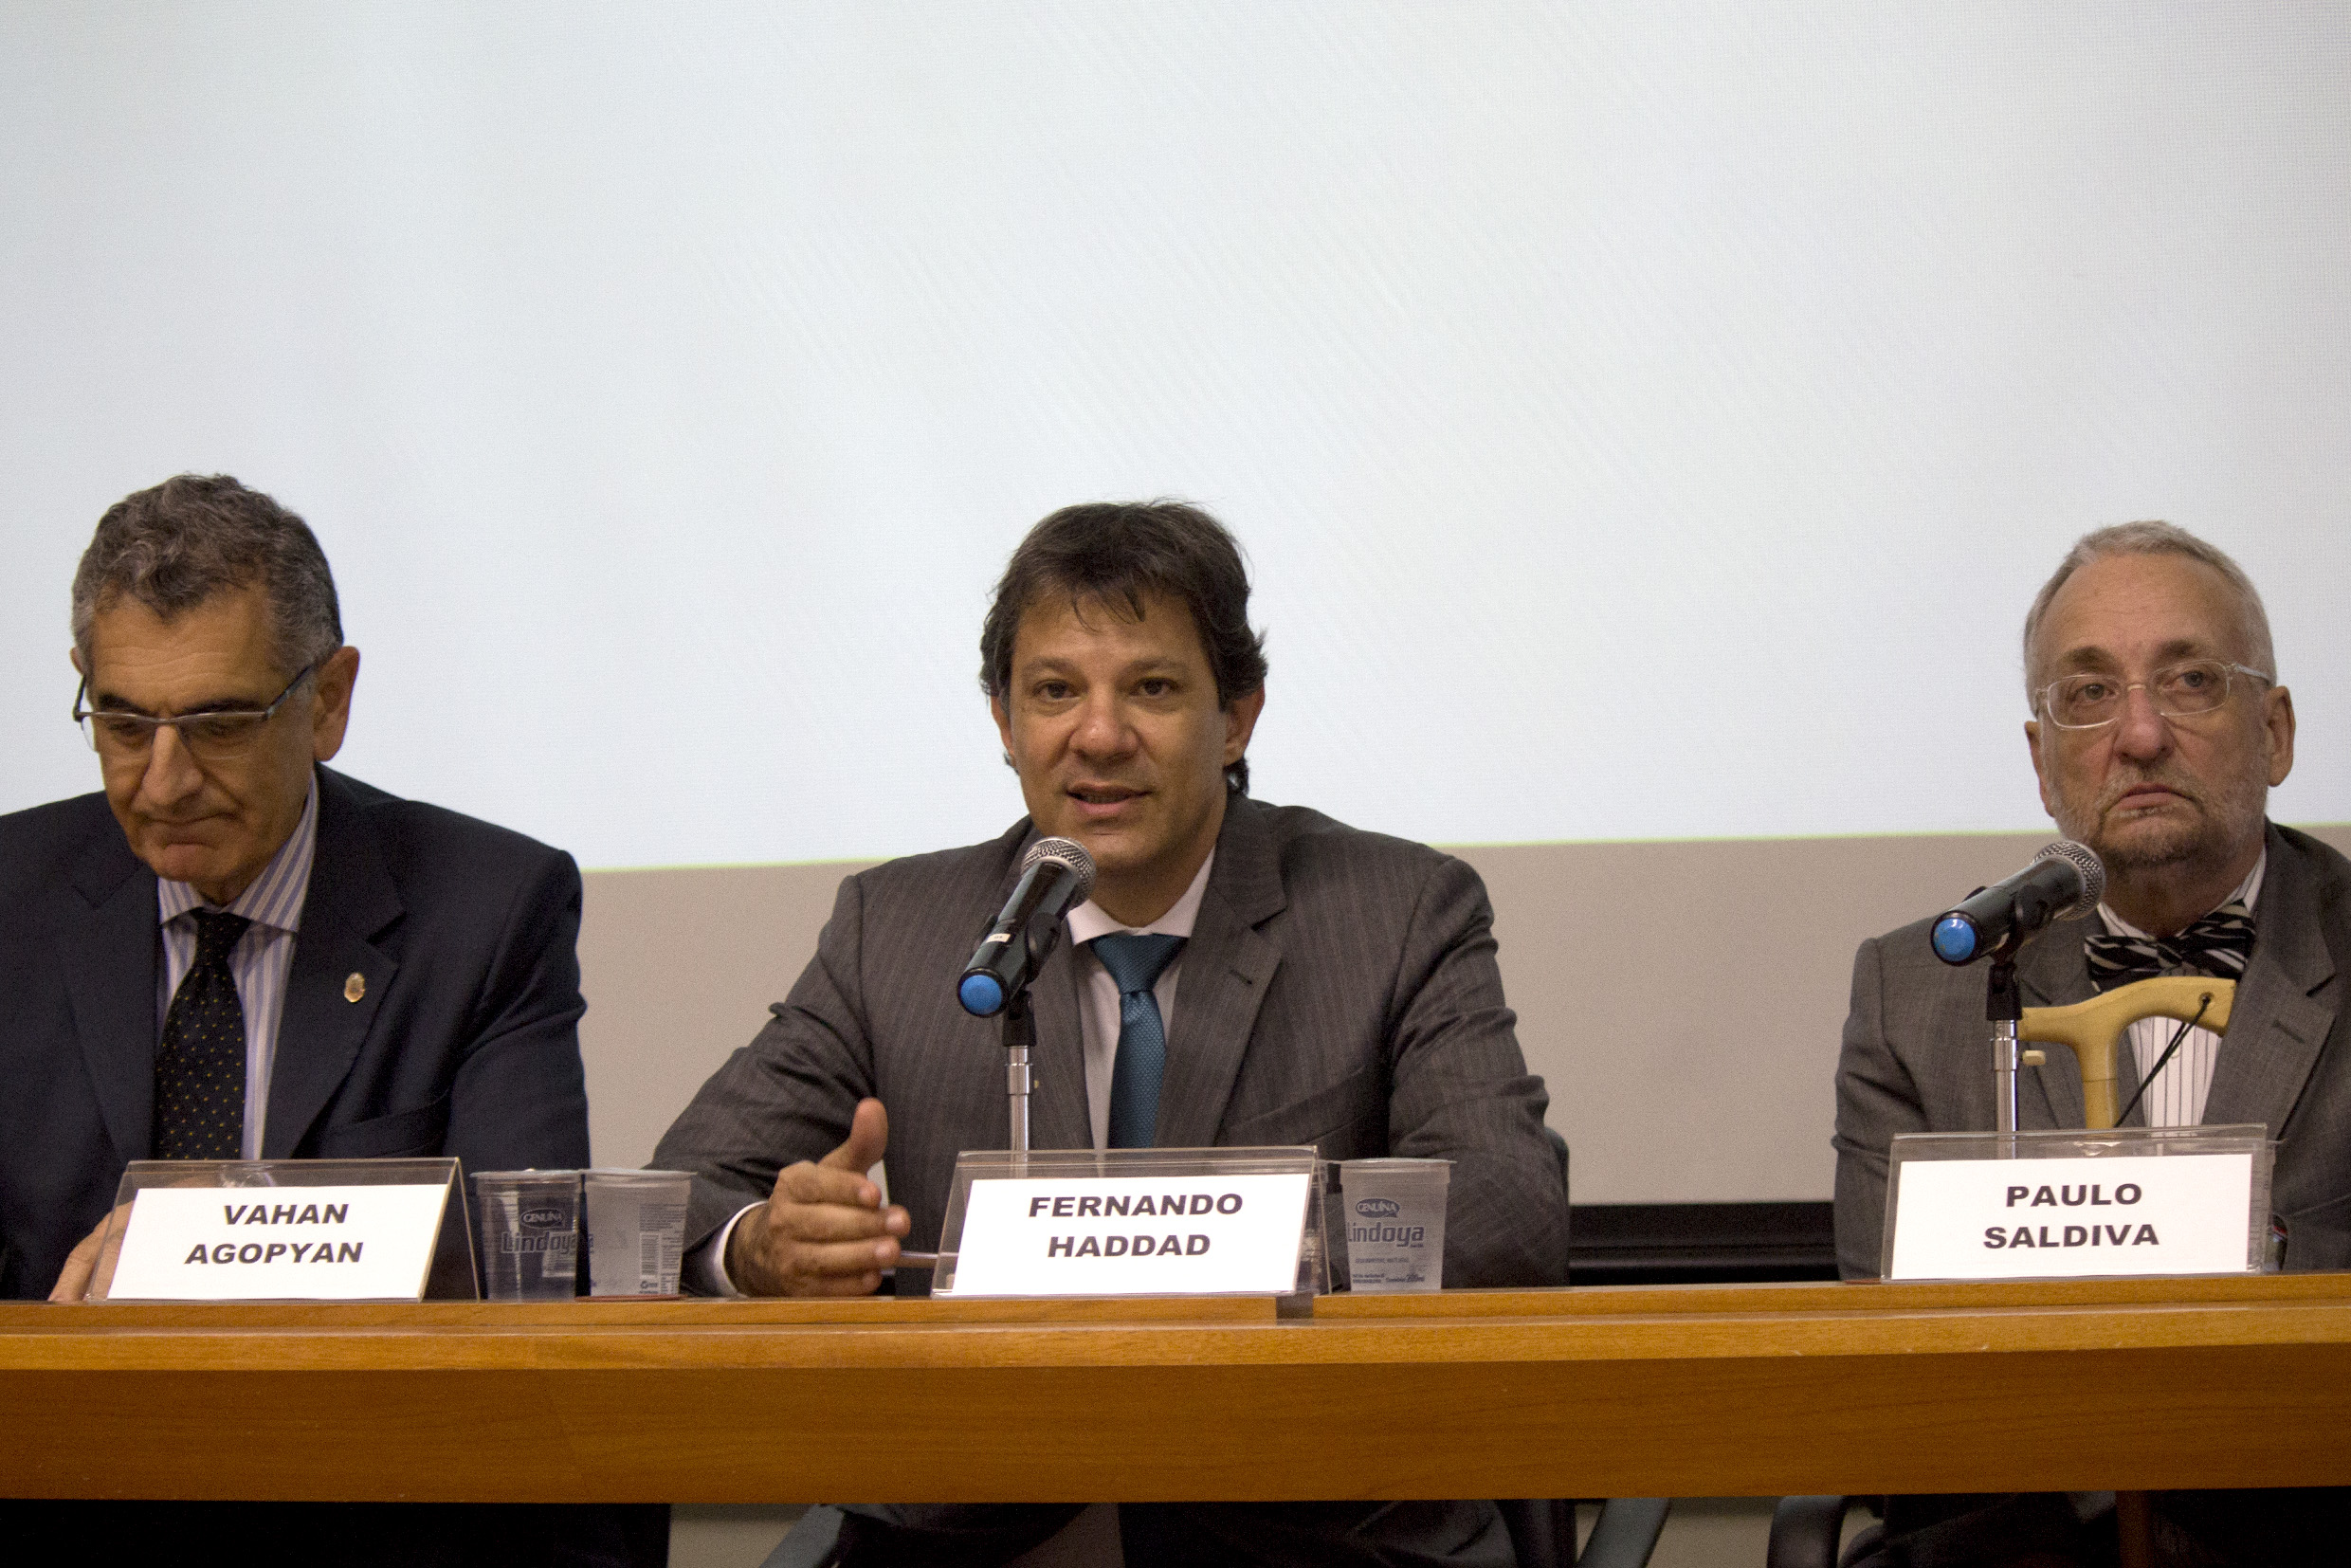 Vahan Agopyan, Fernando Haddad and Paulo Saldiva